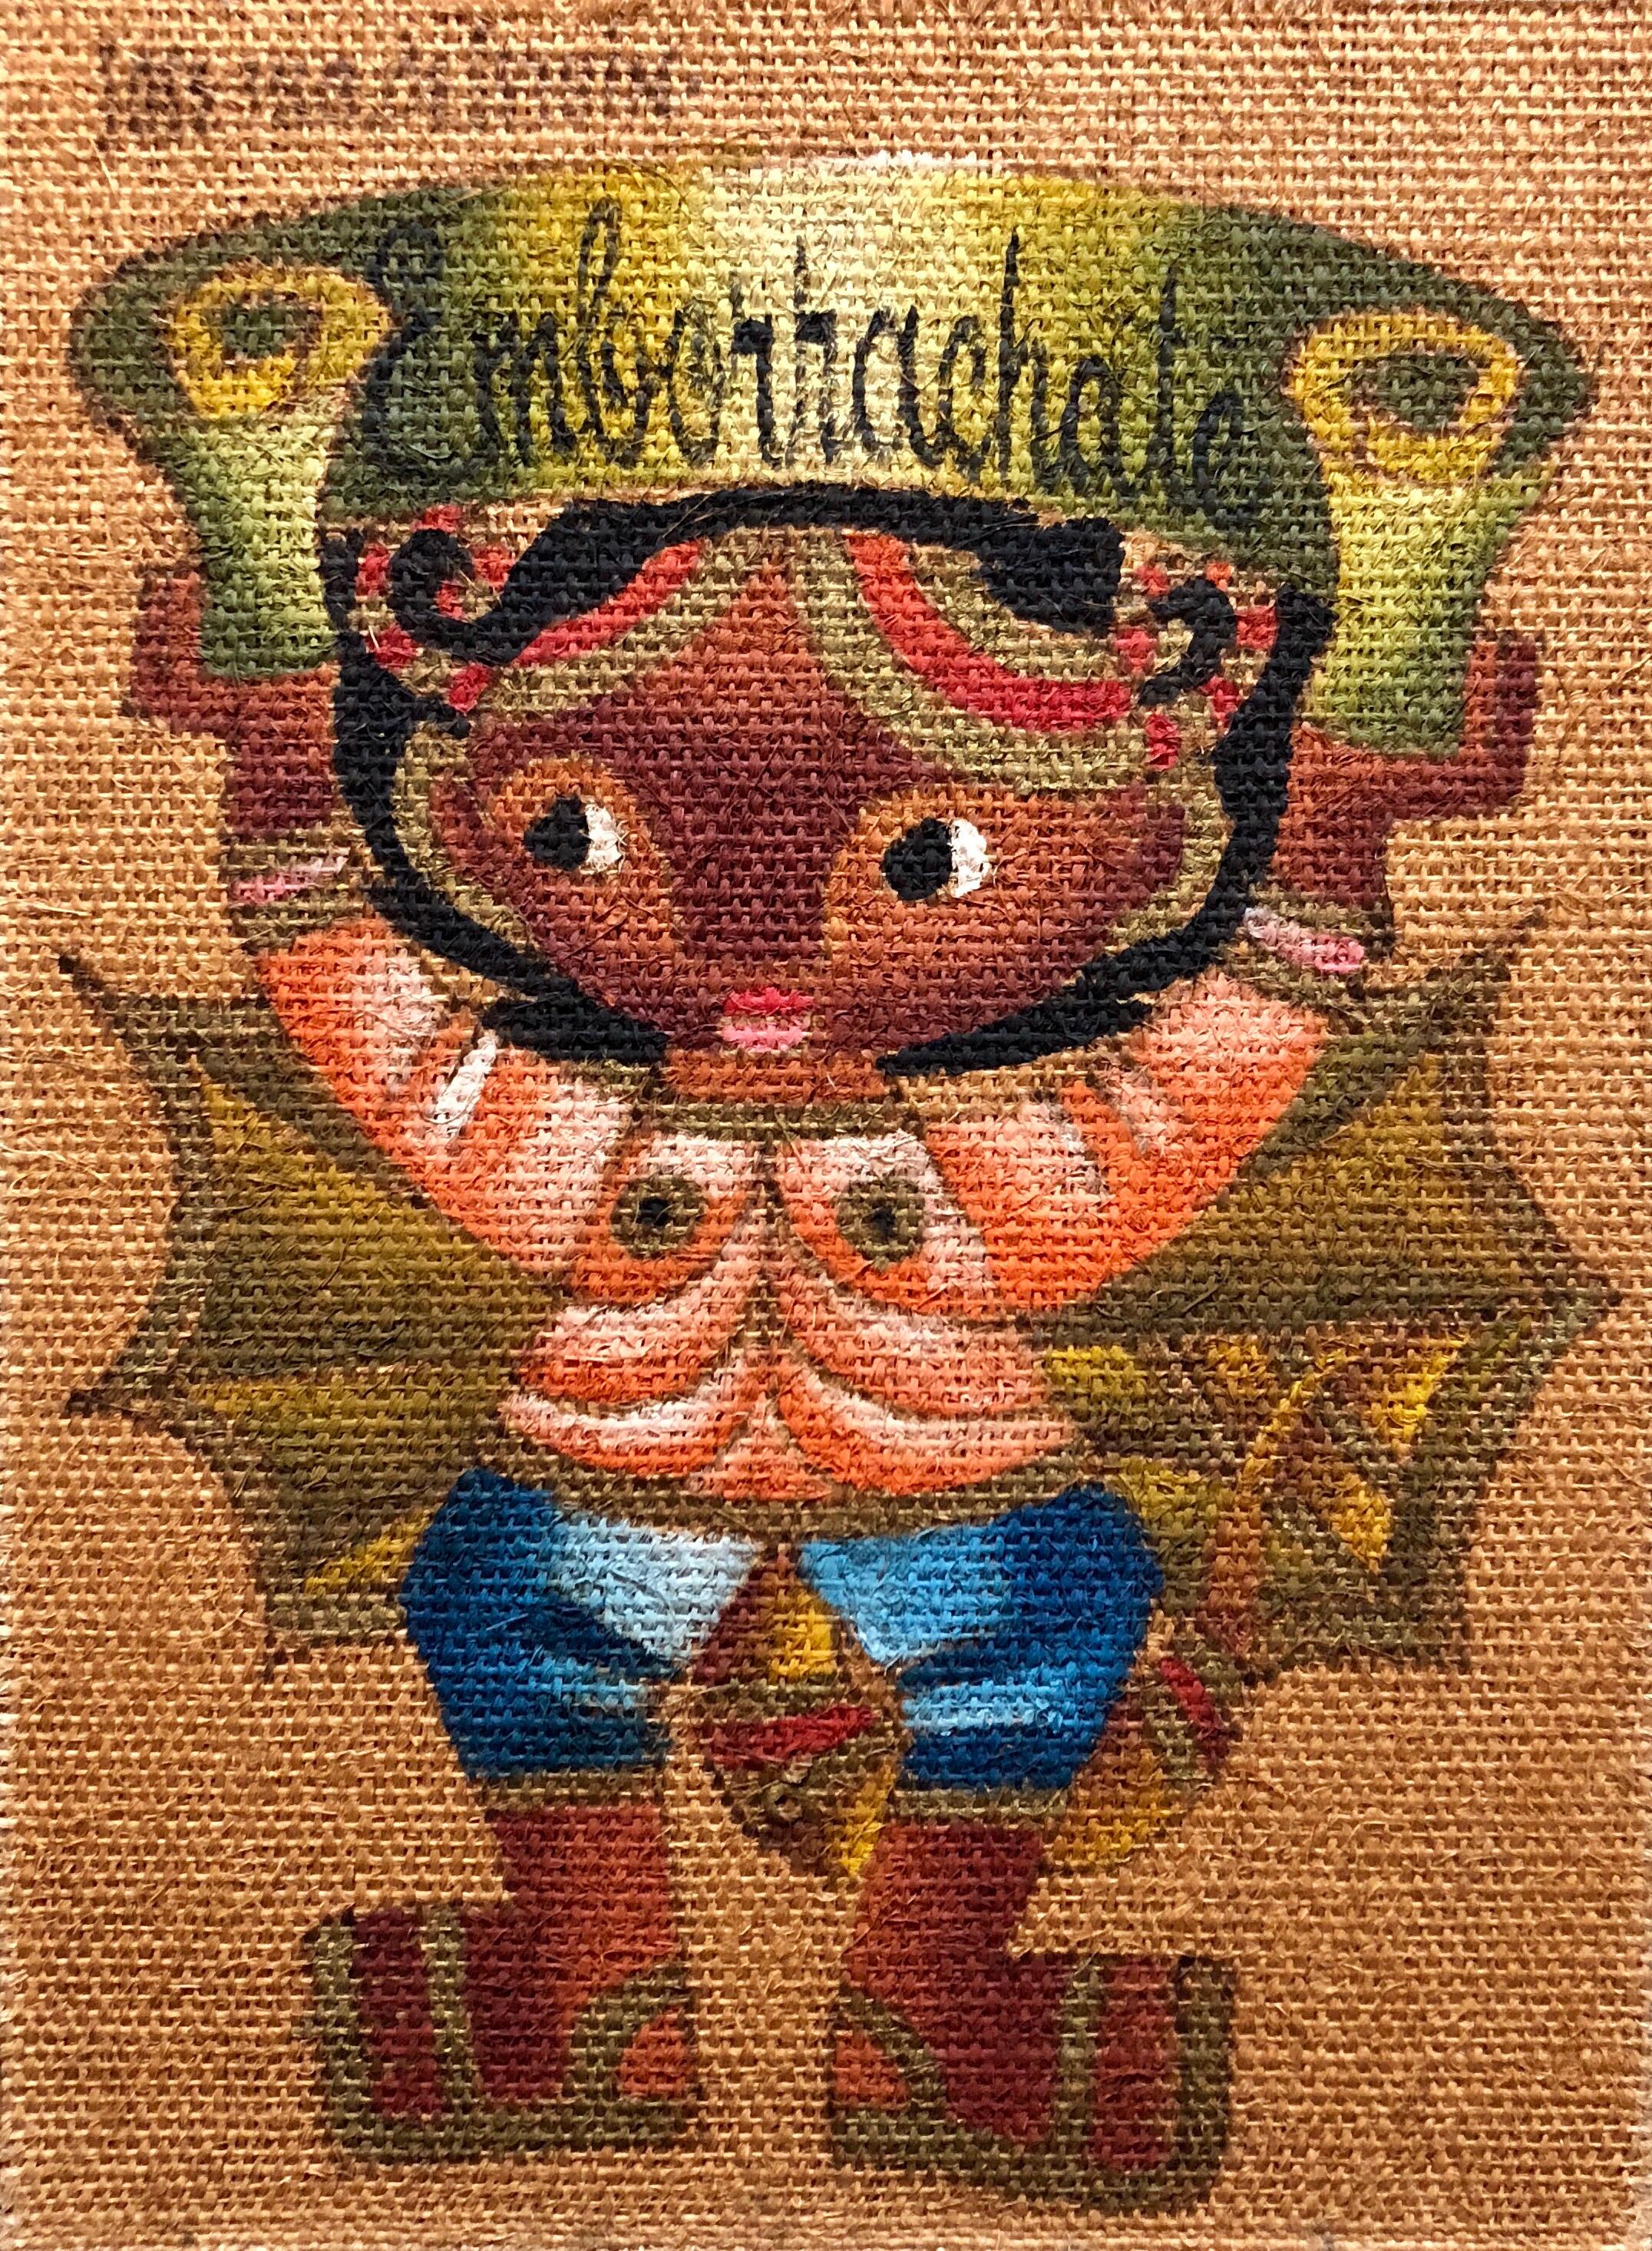 Art Populaire Fille Mexicaine "Emborrachate" Peinture à l'huile sur toile de jute